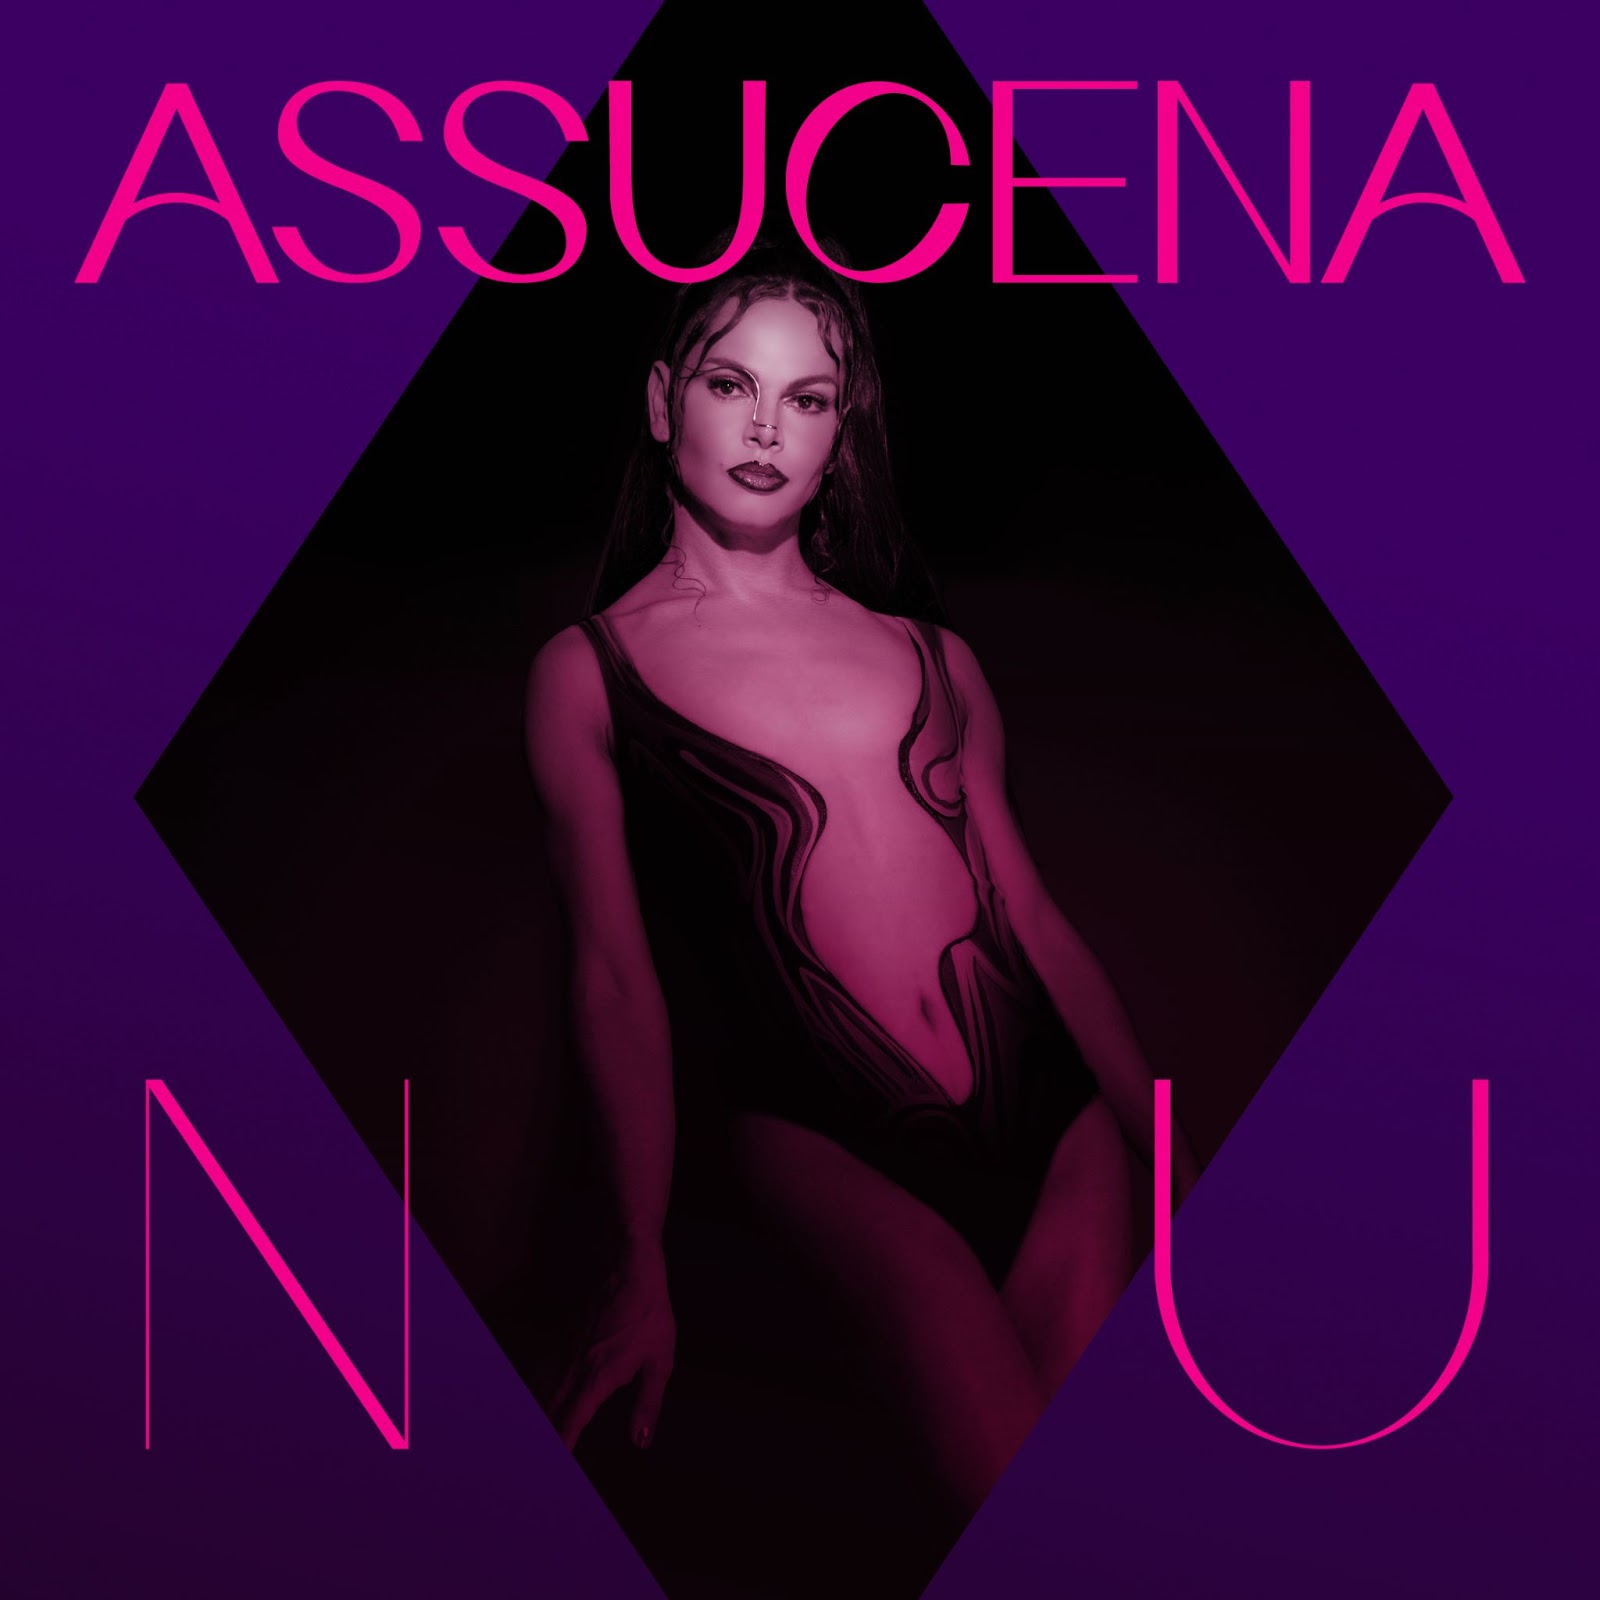 Assucena lança o single “NU”, balada dançante repleta de mistérios, brasilidade e sensualidade